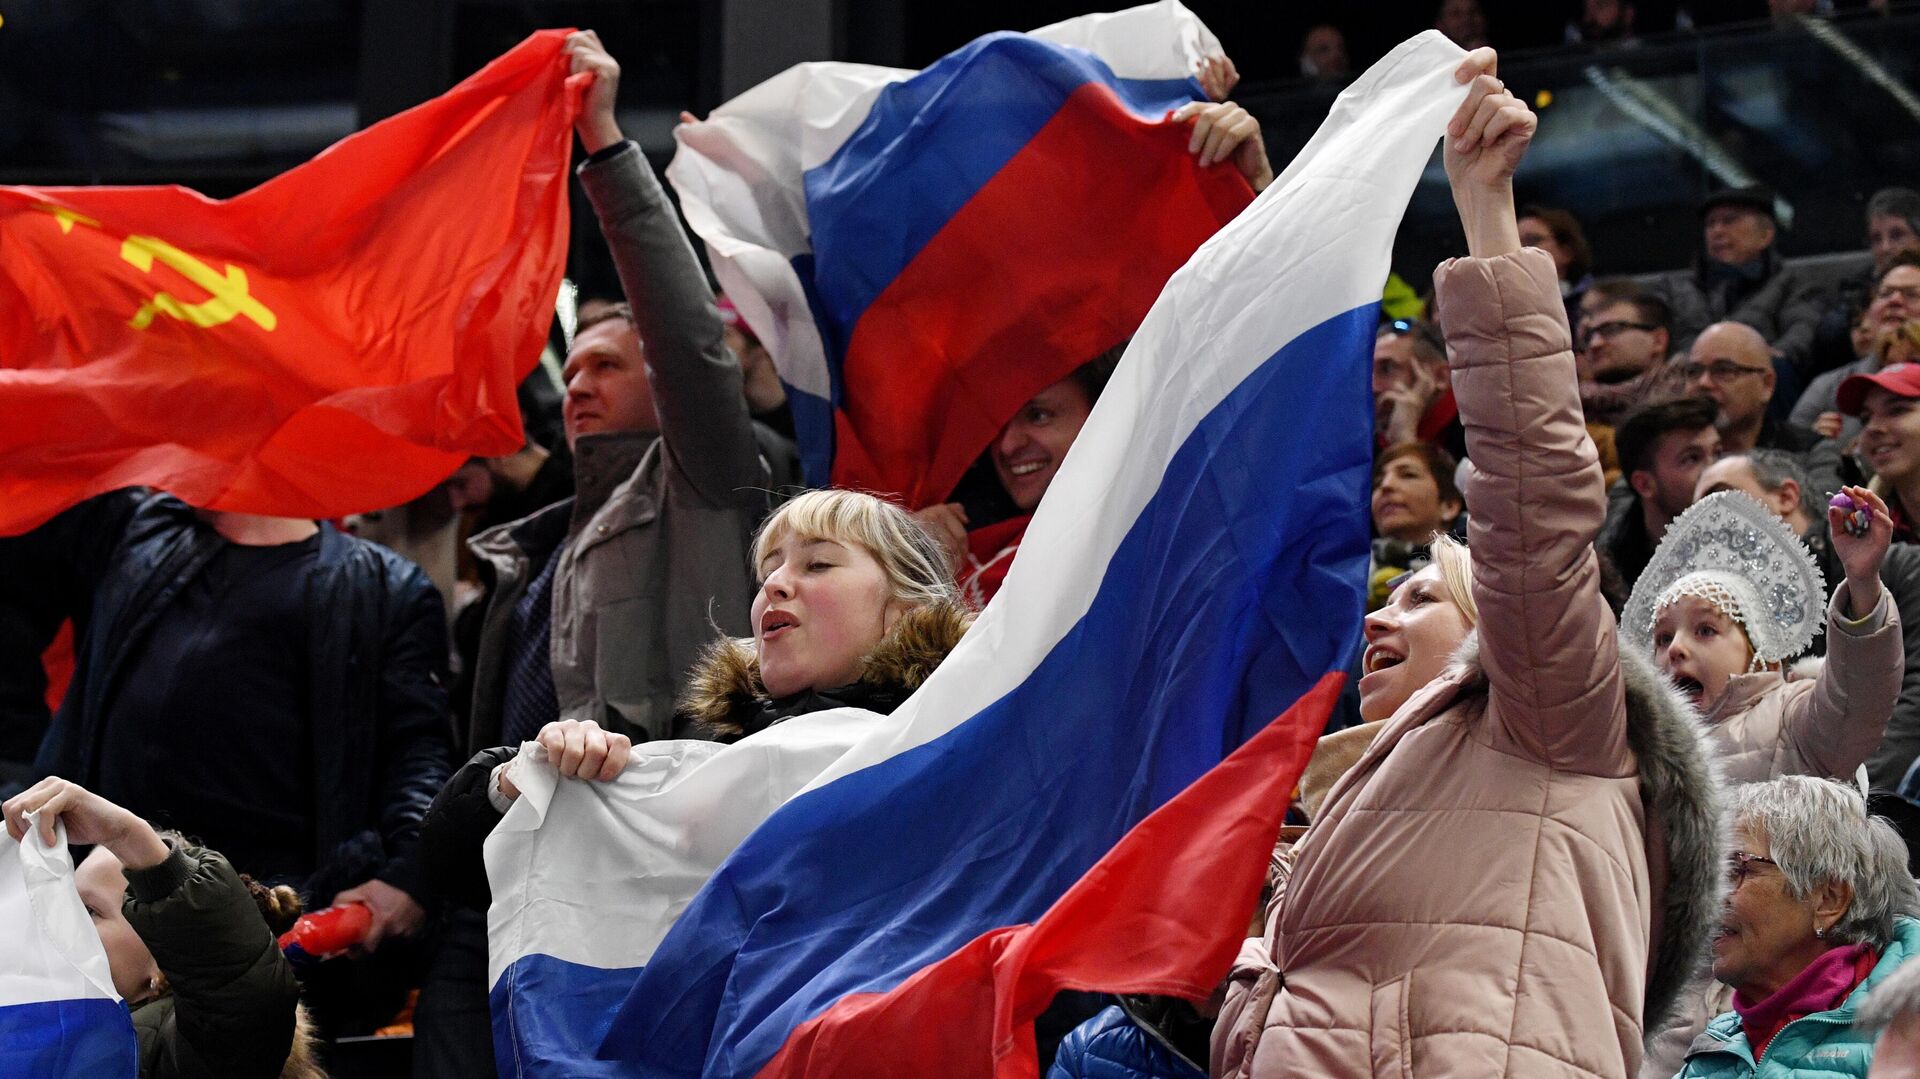 IIHF: У болельщиков отберут флаги России и Белоруссии в случае прохода на матчи ЧМ